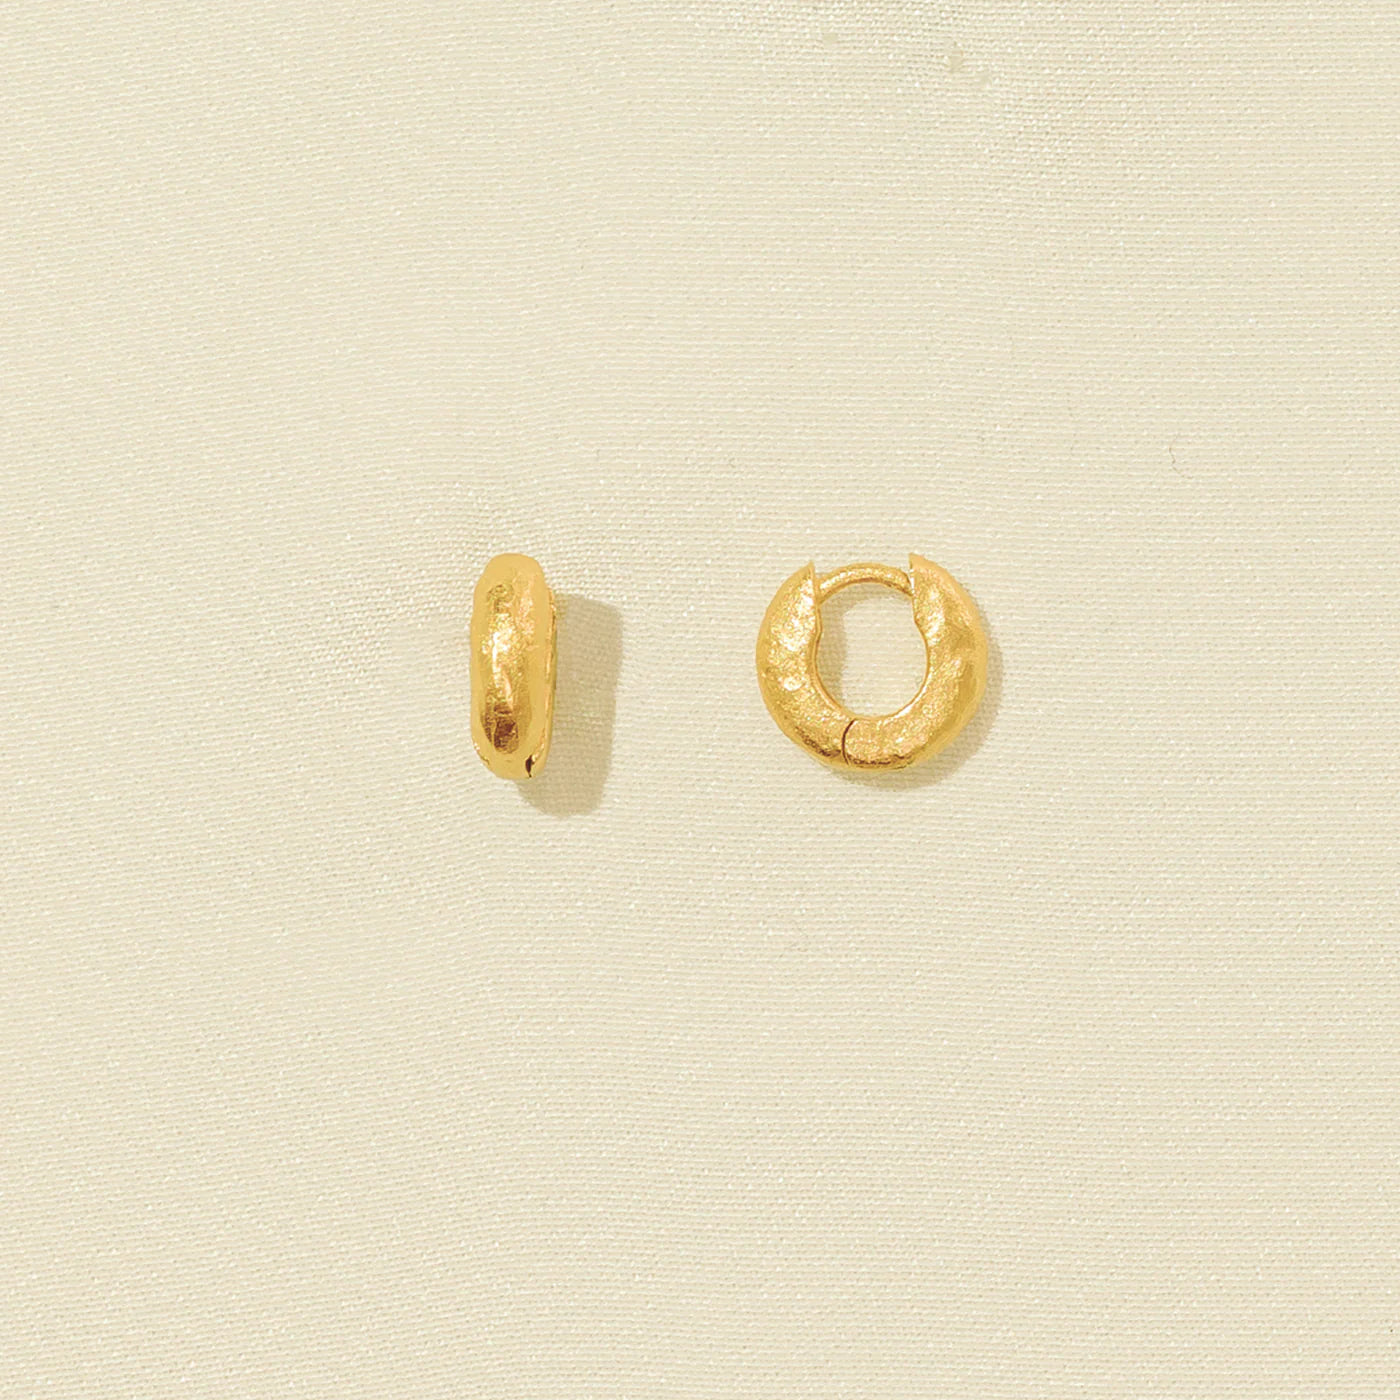 Anilla Mini Earrings